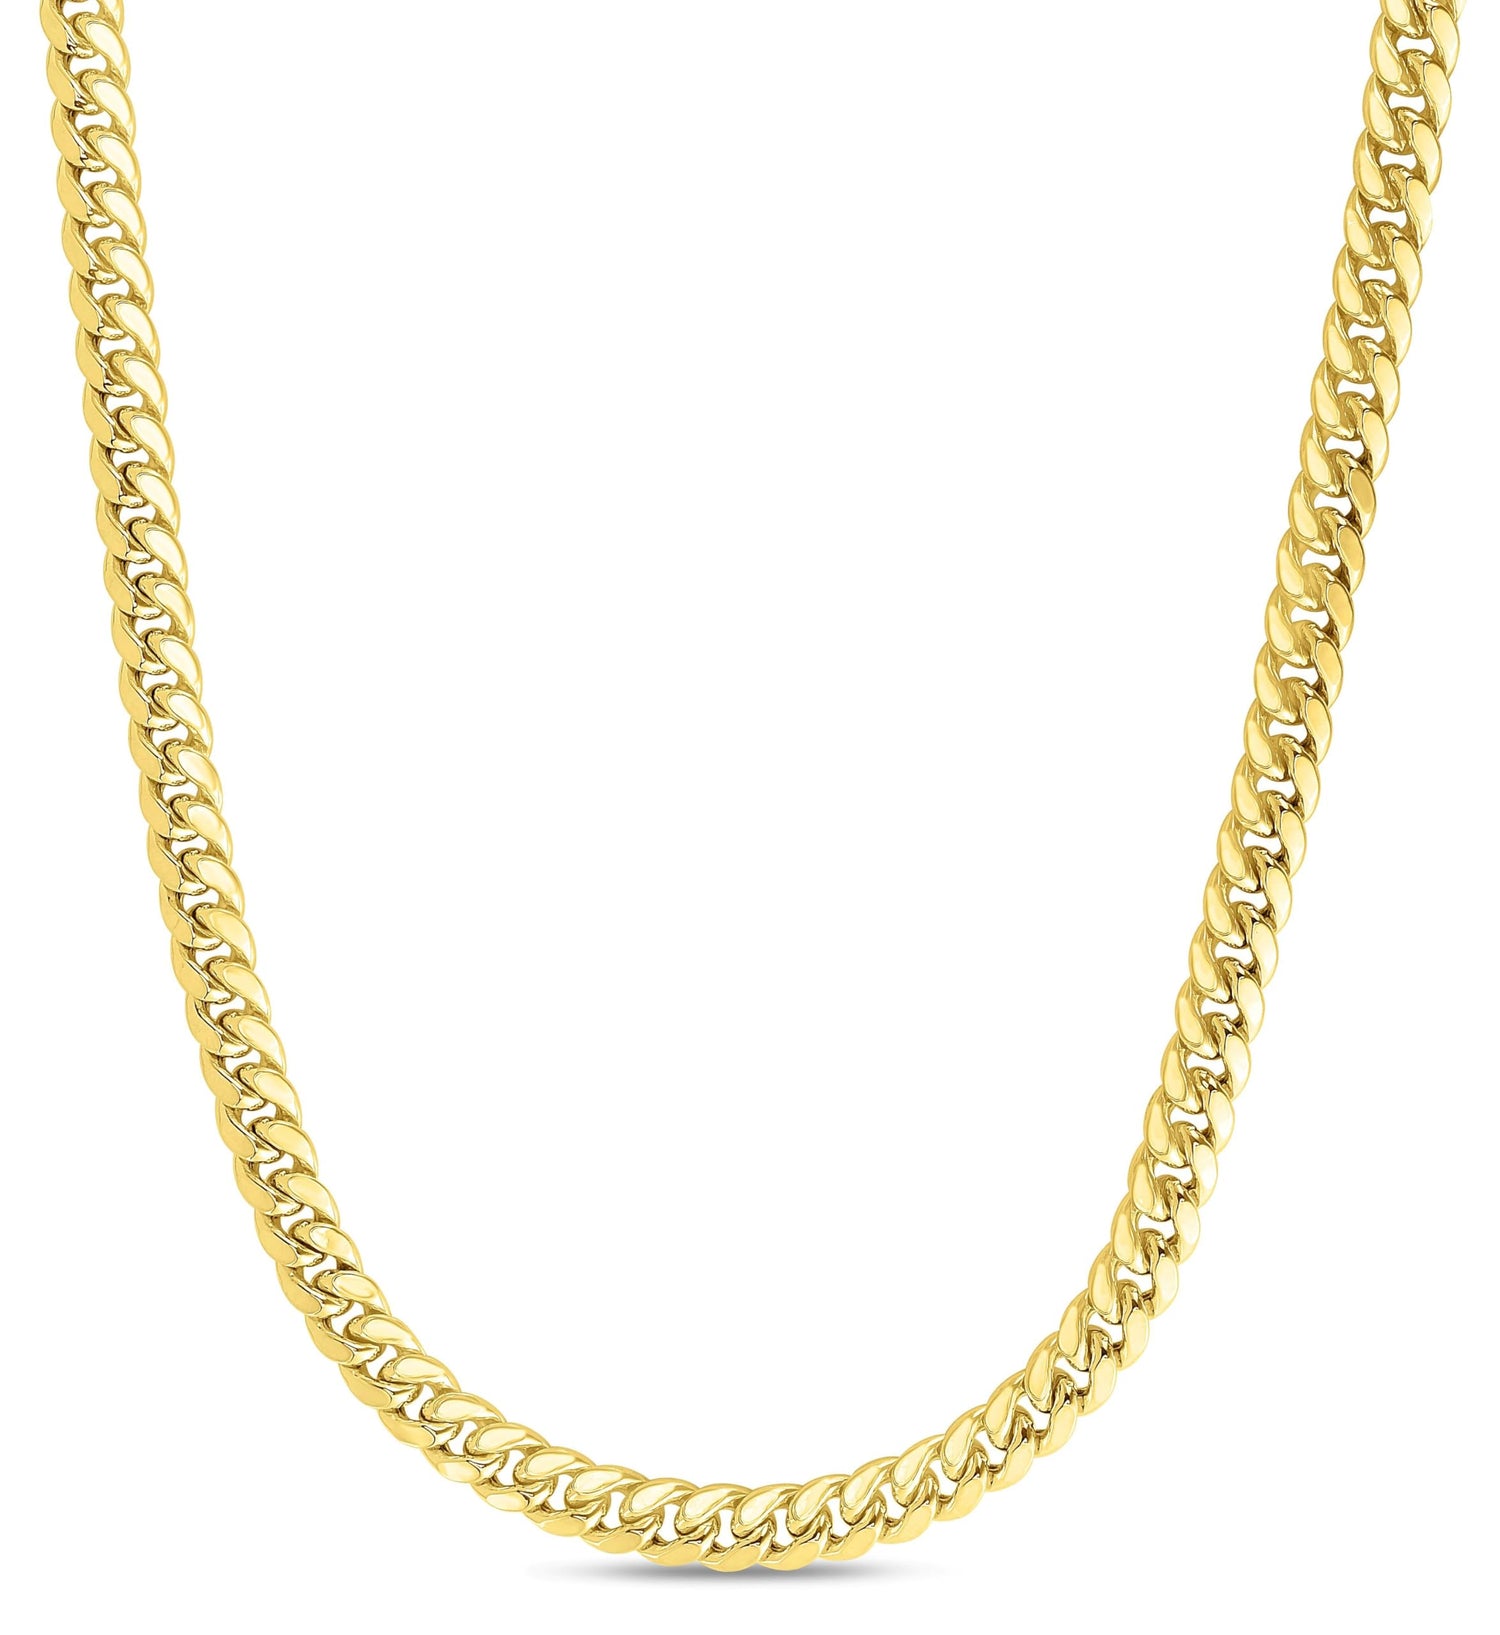 10k Yellow Gold 6.1mm Semi-Lite Miami Cuban Chain Necklace